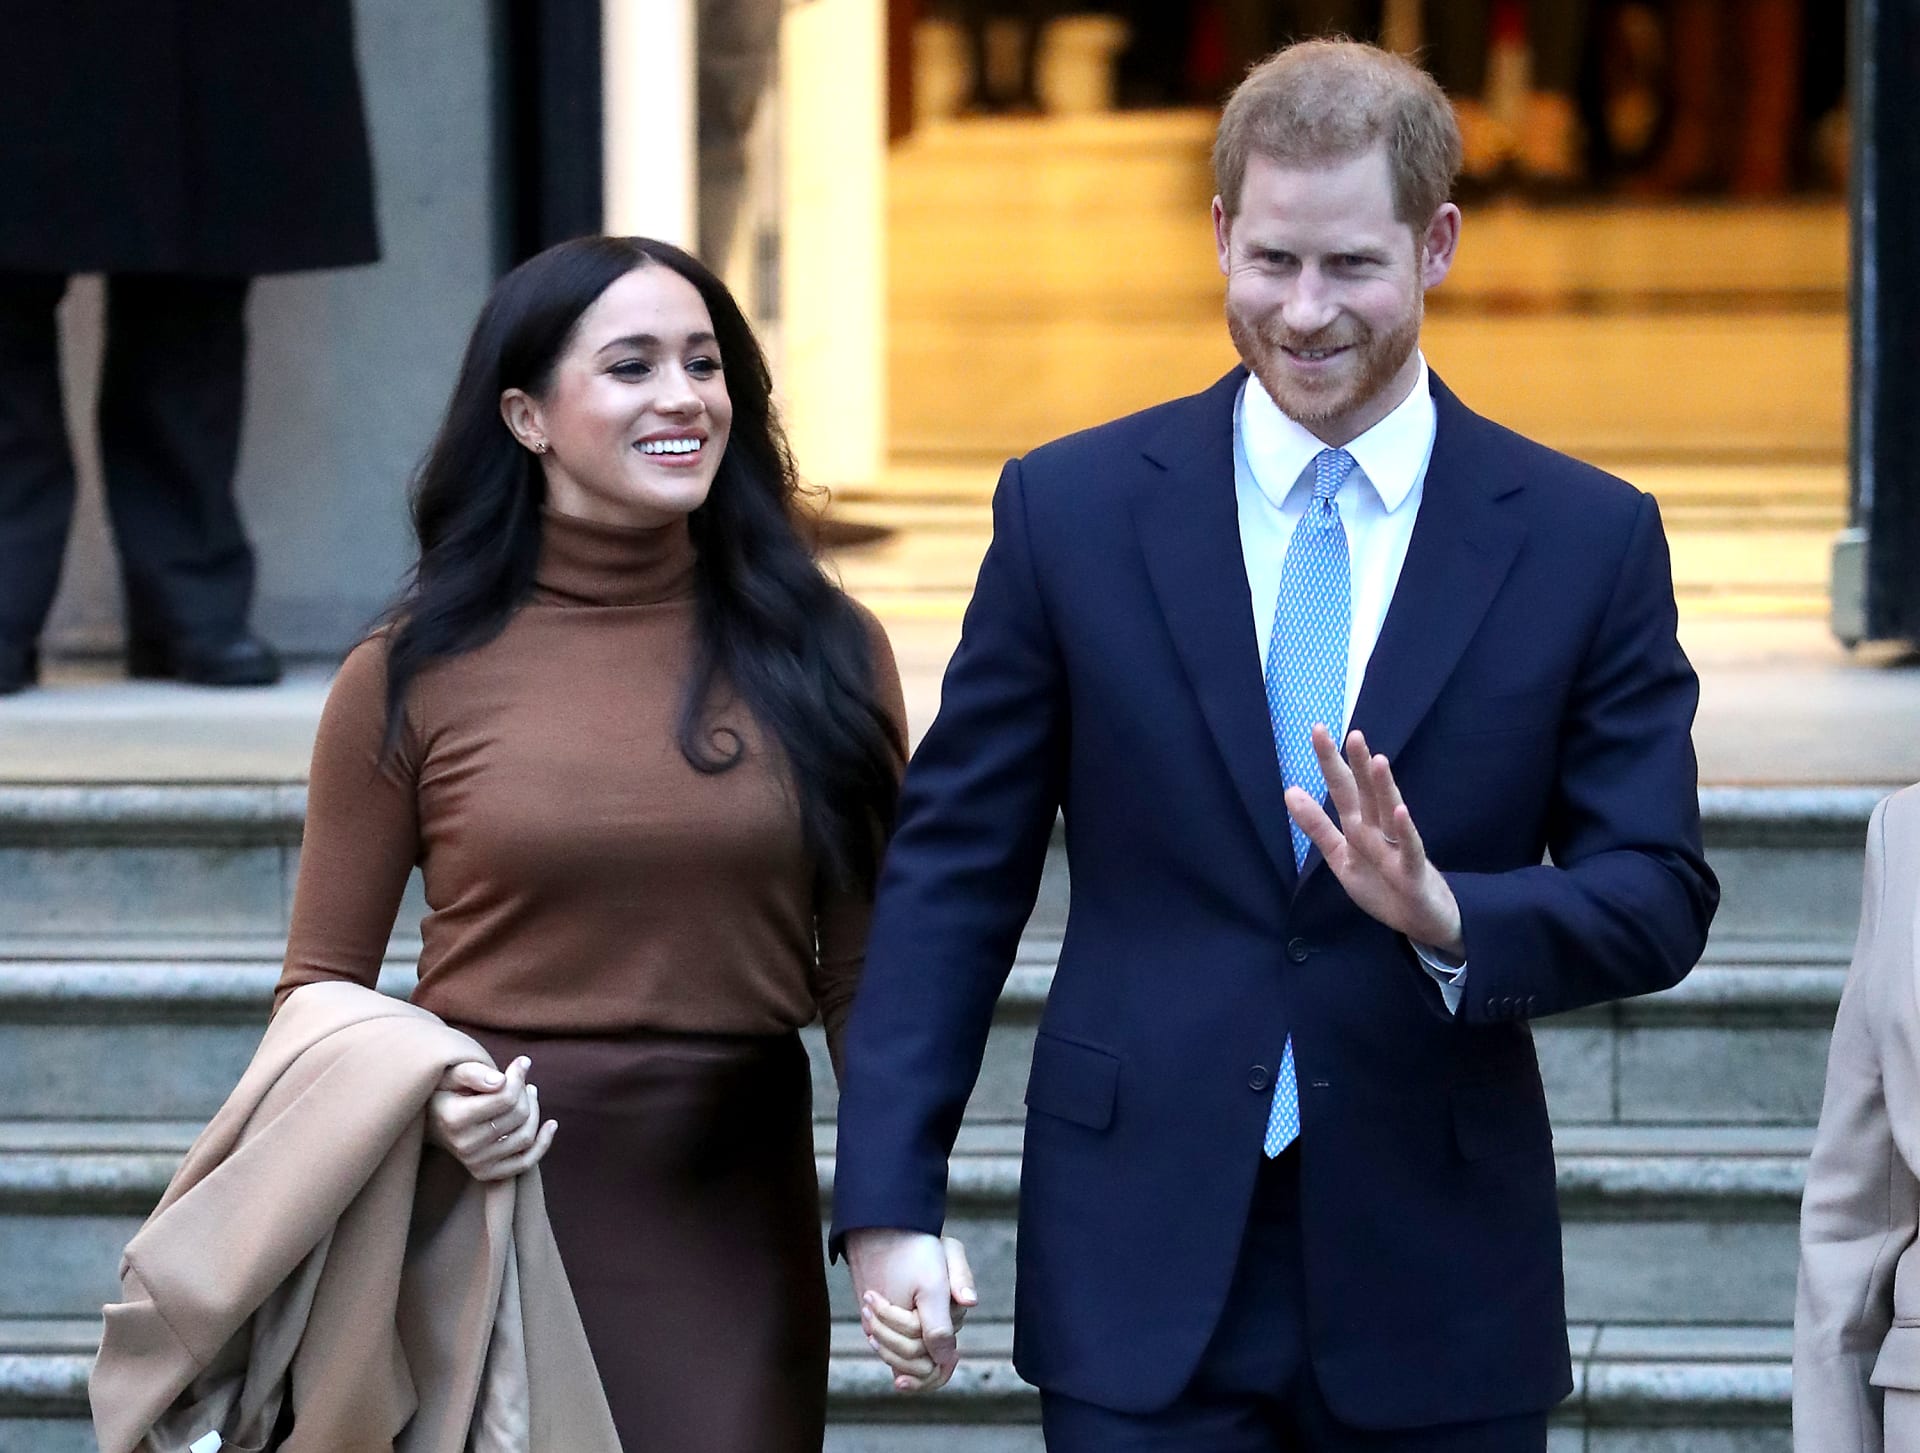 الأمير هاري وزوجته ميغان يتخليان عن دورهما كأعضاء "بارزين" بالعائلة الملكية البريطانية